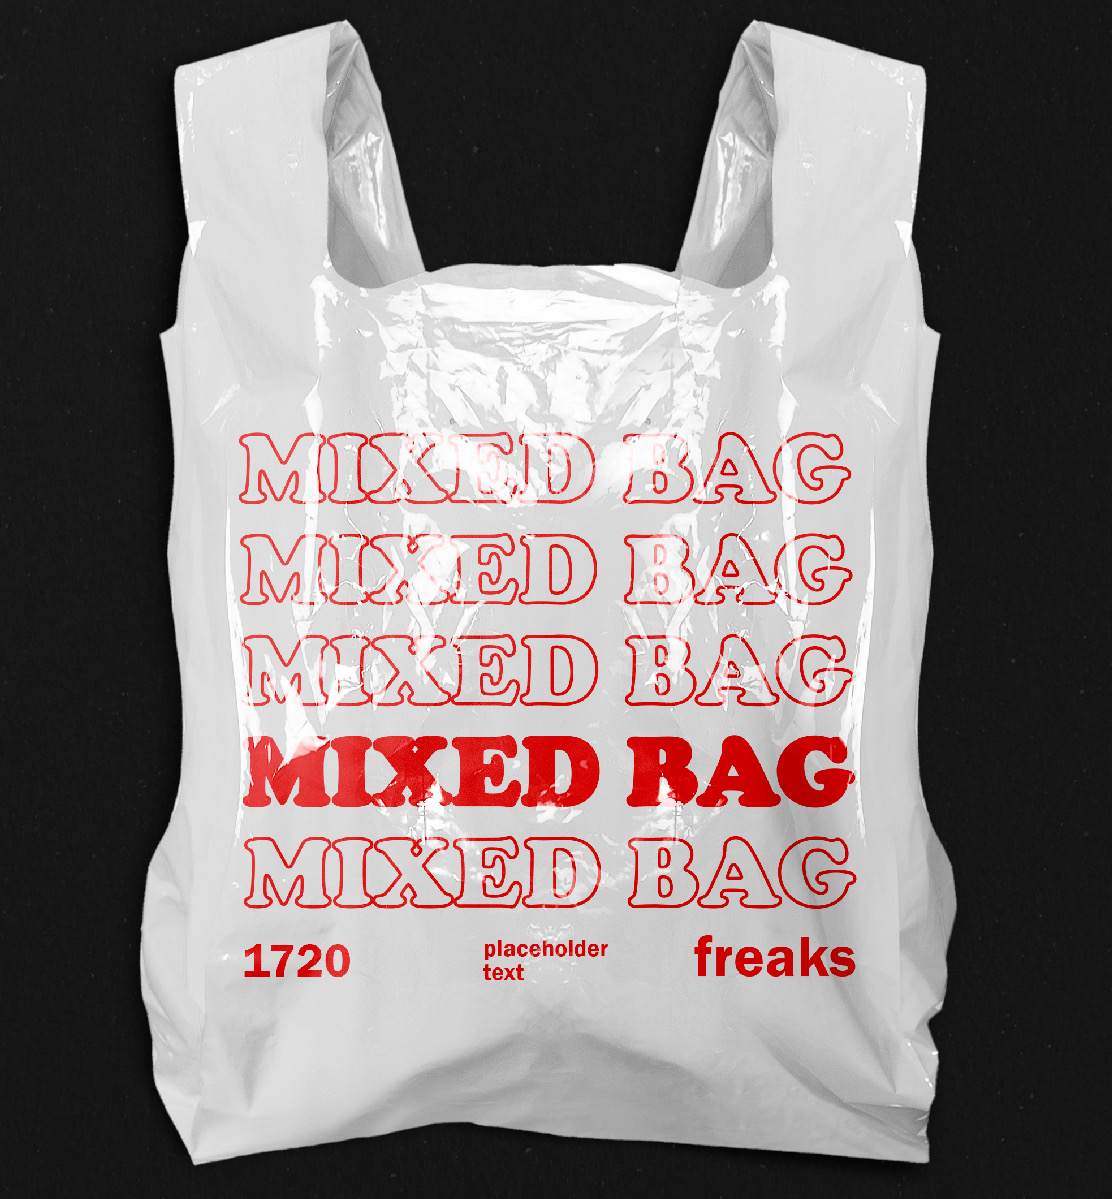 Mixed Bag - Página trasera